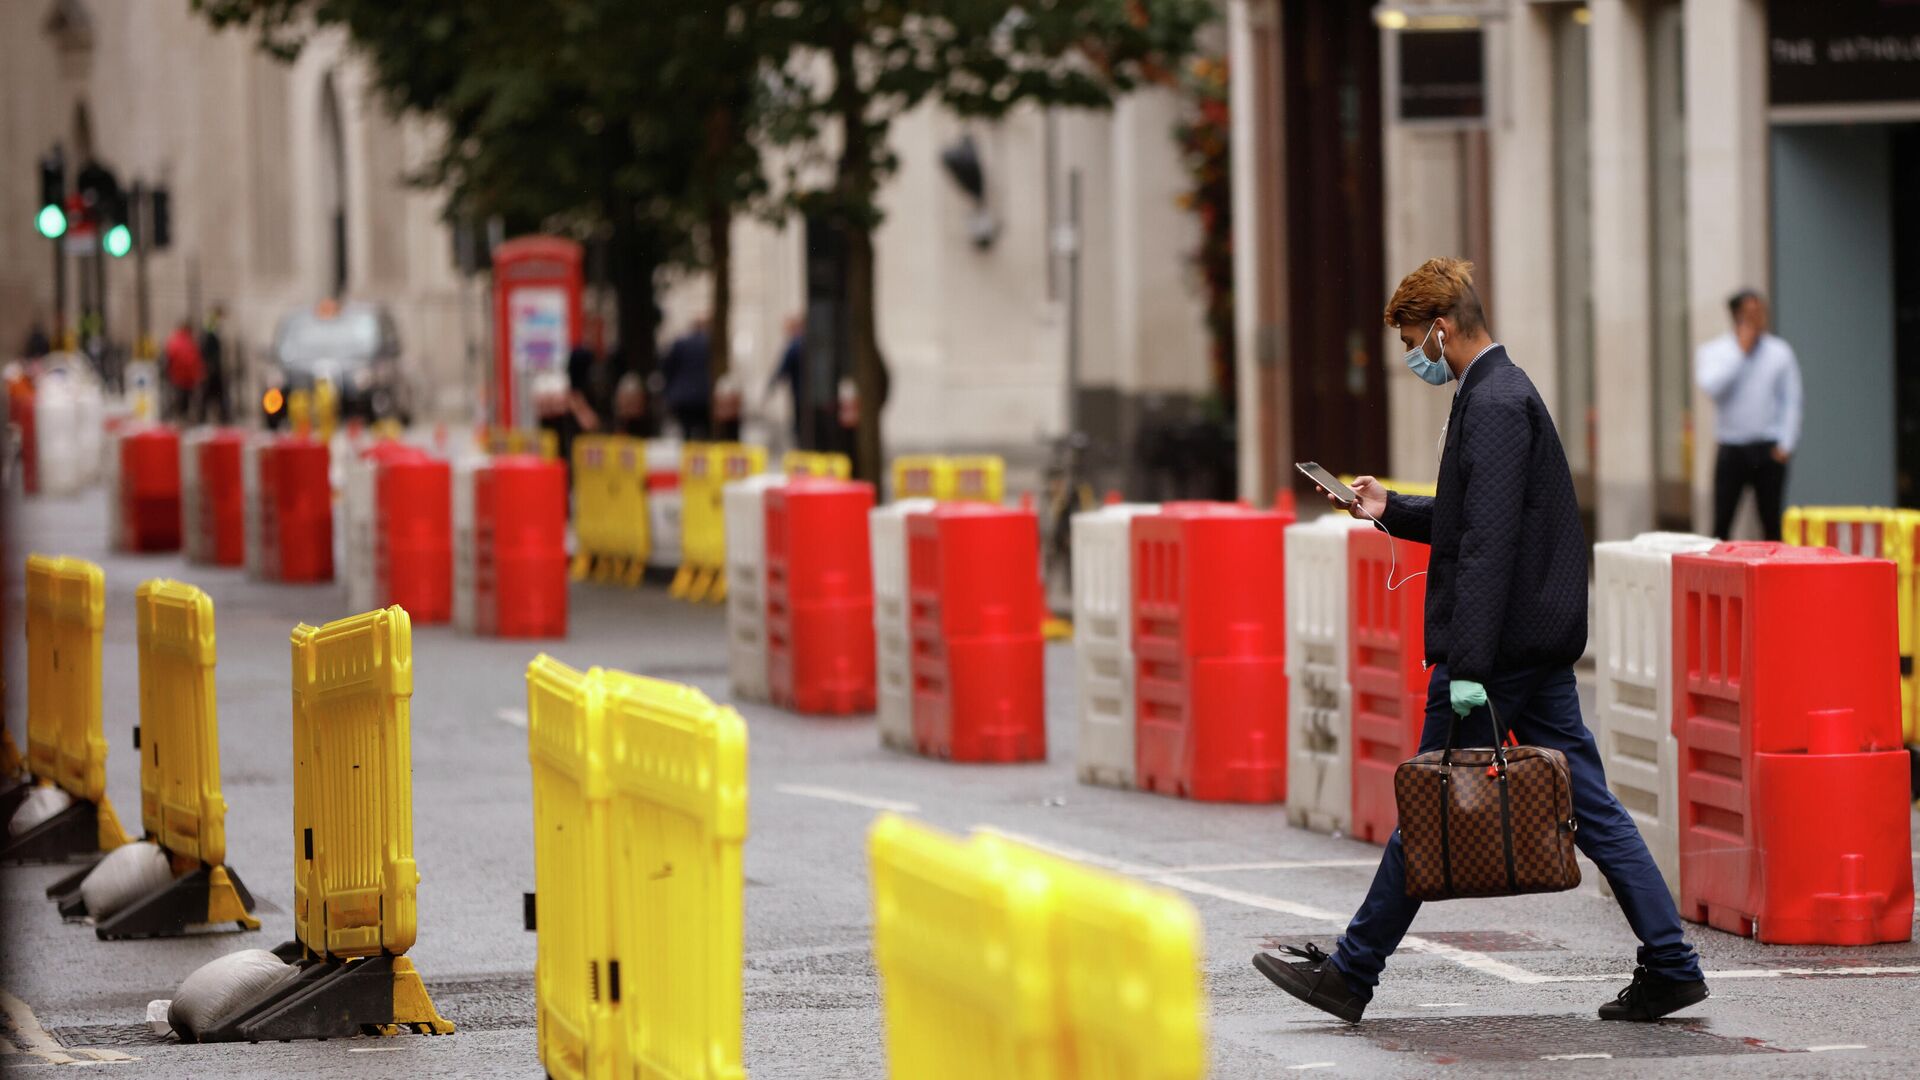 Мужчина в защитной маске переходит дорогу с установленными на ней барьерами для социального дистанцирования в Лондоне - РИА Новости, 1920, 15.10.2020